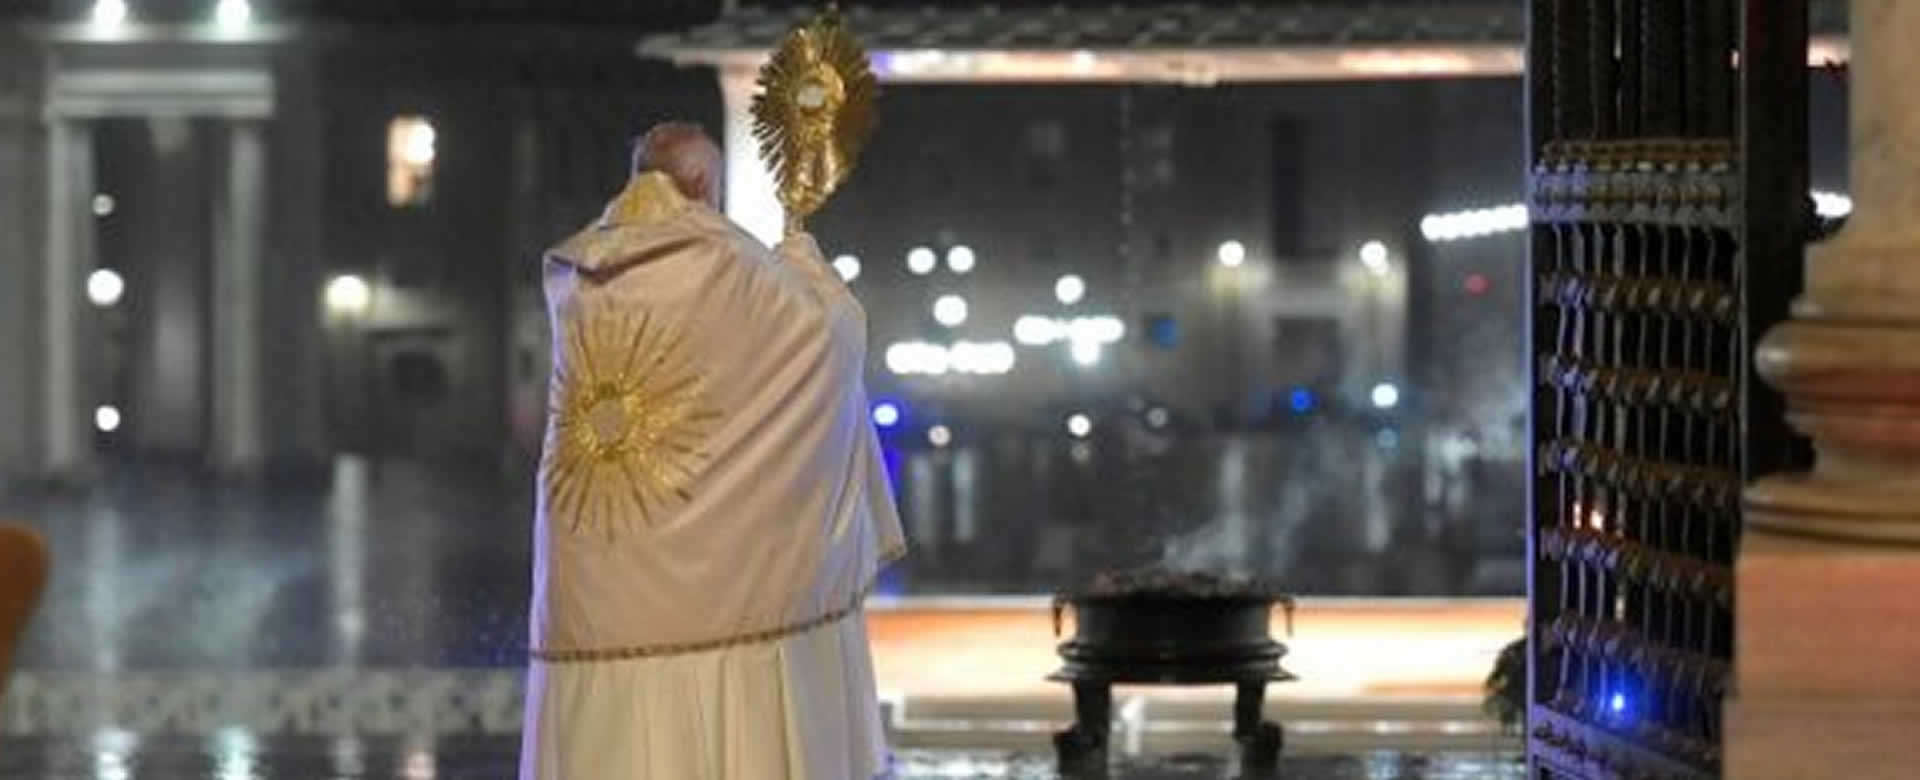 Pontífice llama a “Que todos seamos uno” en la lucha contra el COVID-19